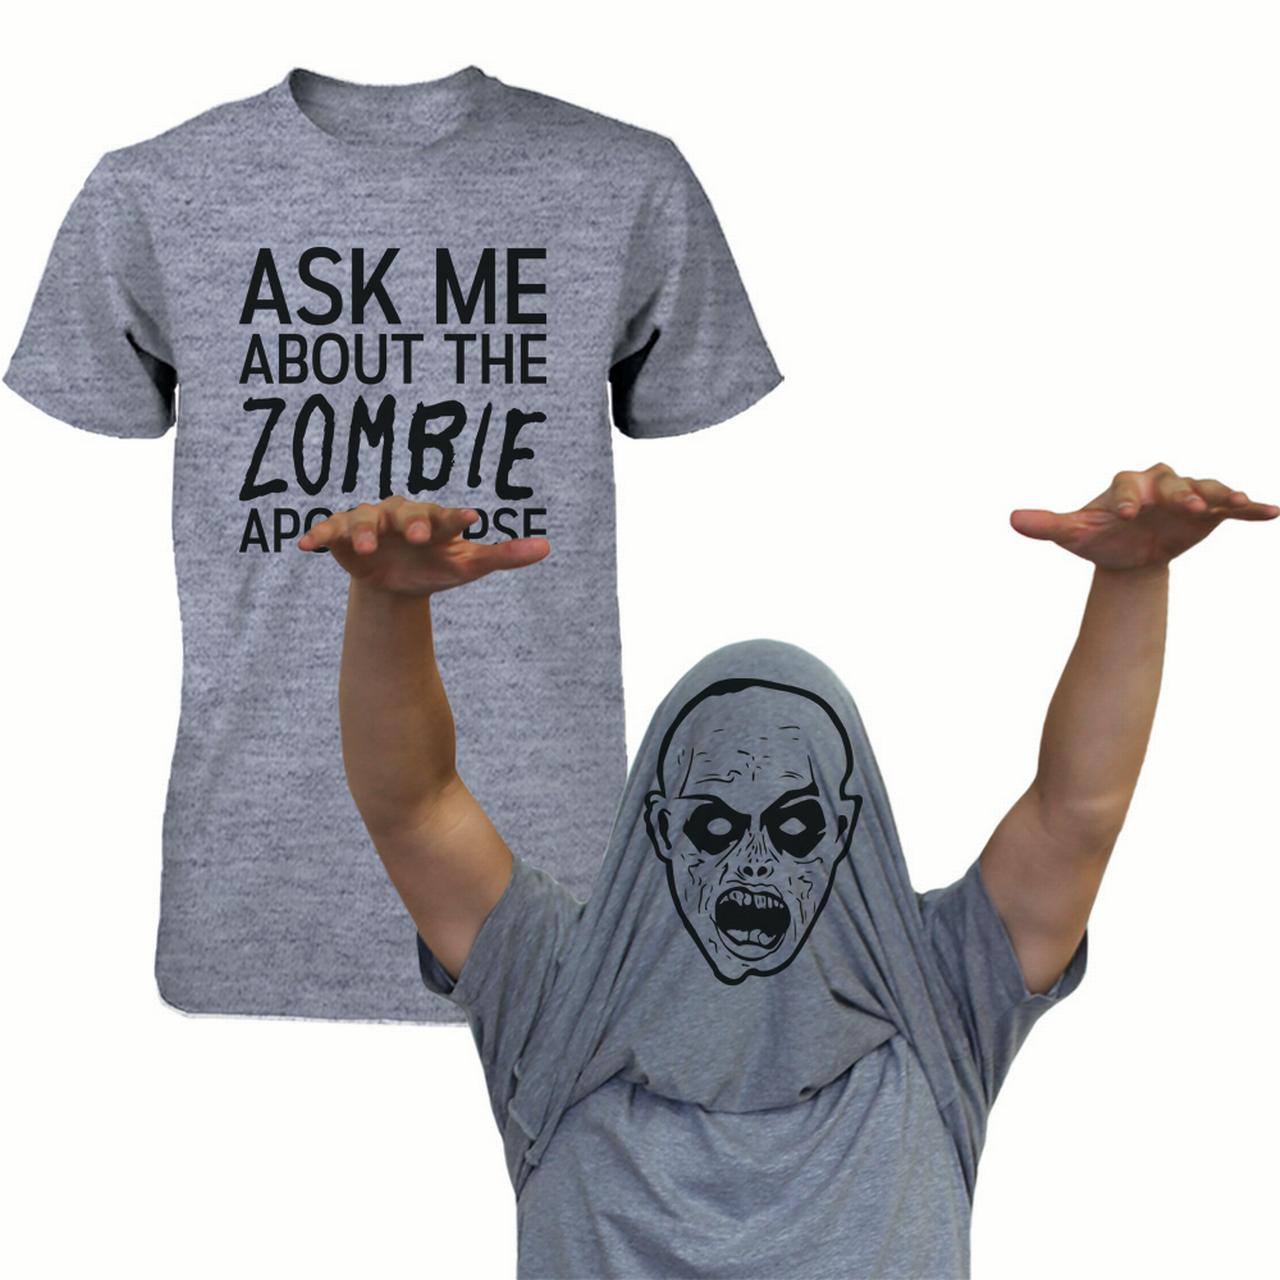 T-shirt Design Ideas